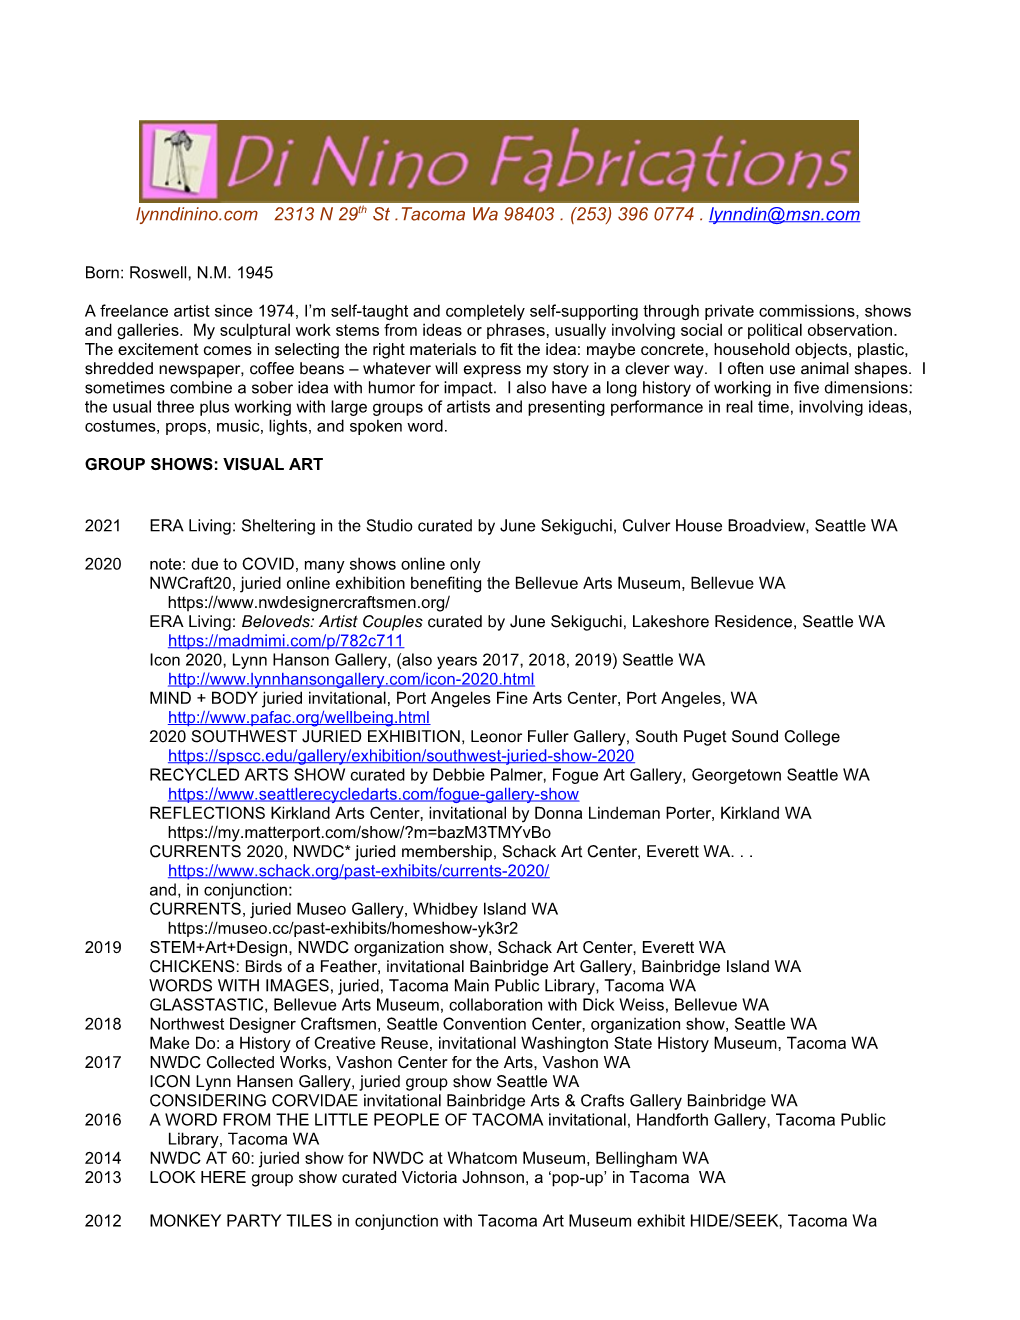 Resume Di Nino Full 2020 (Pdf) Download